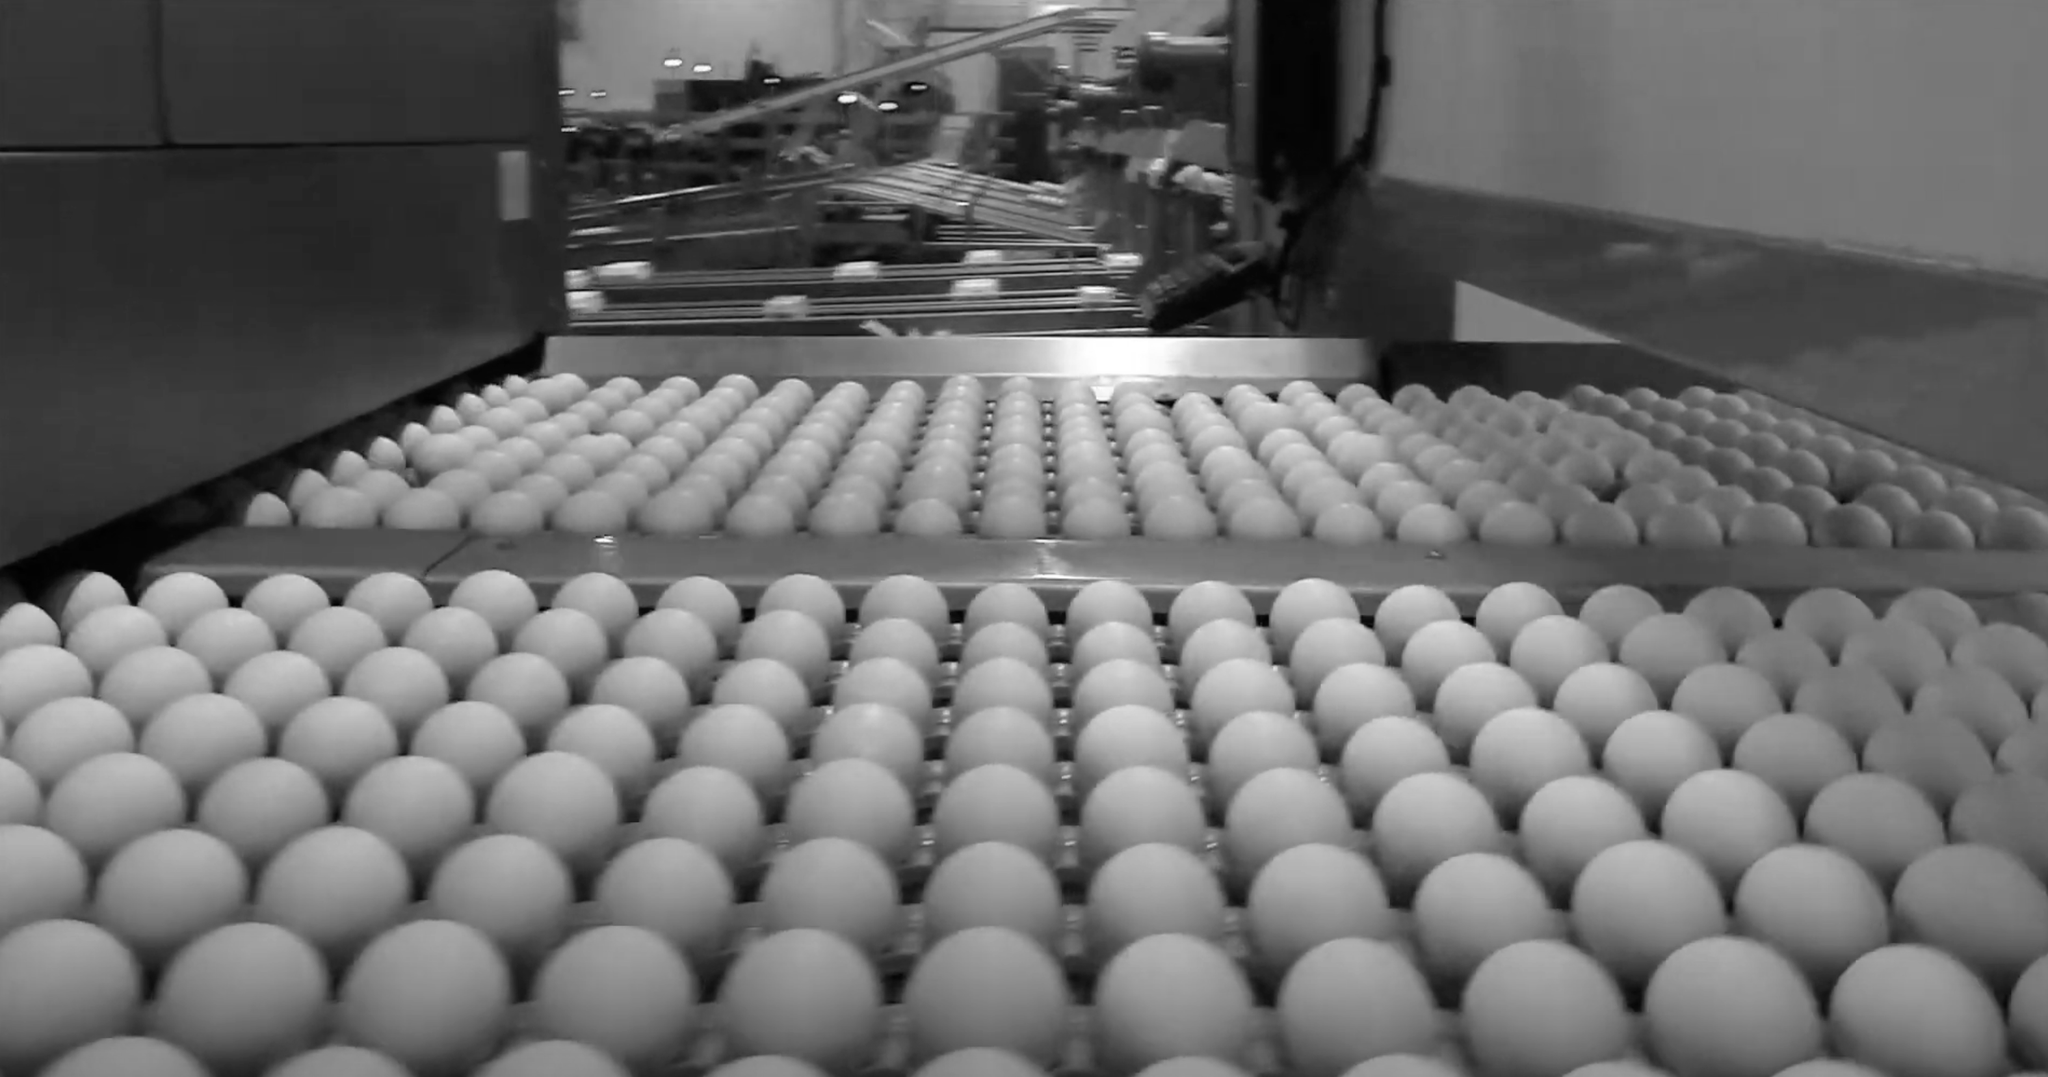 eggs in conveyor